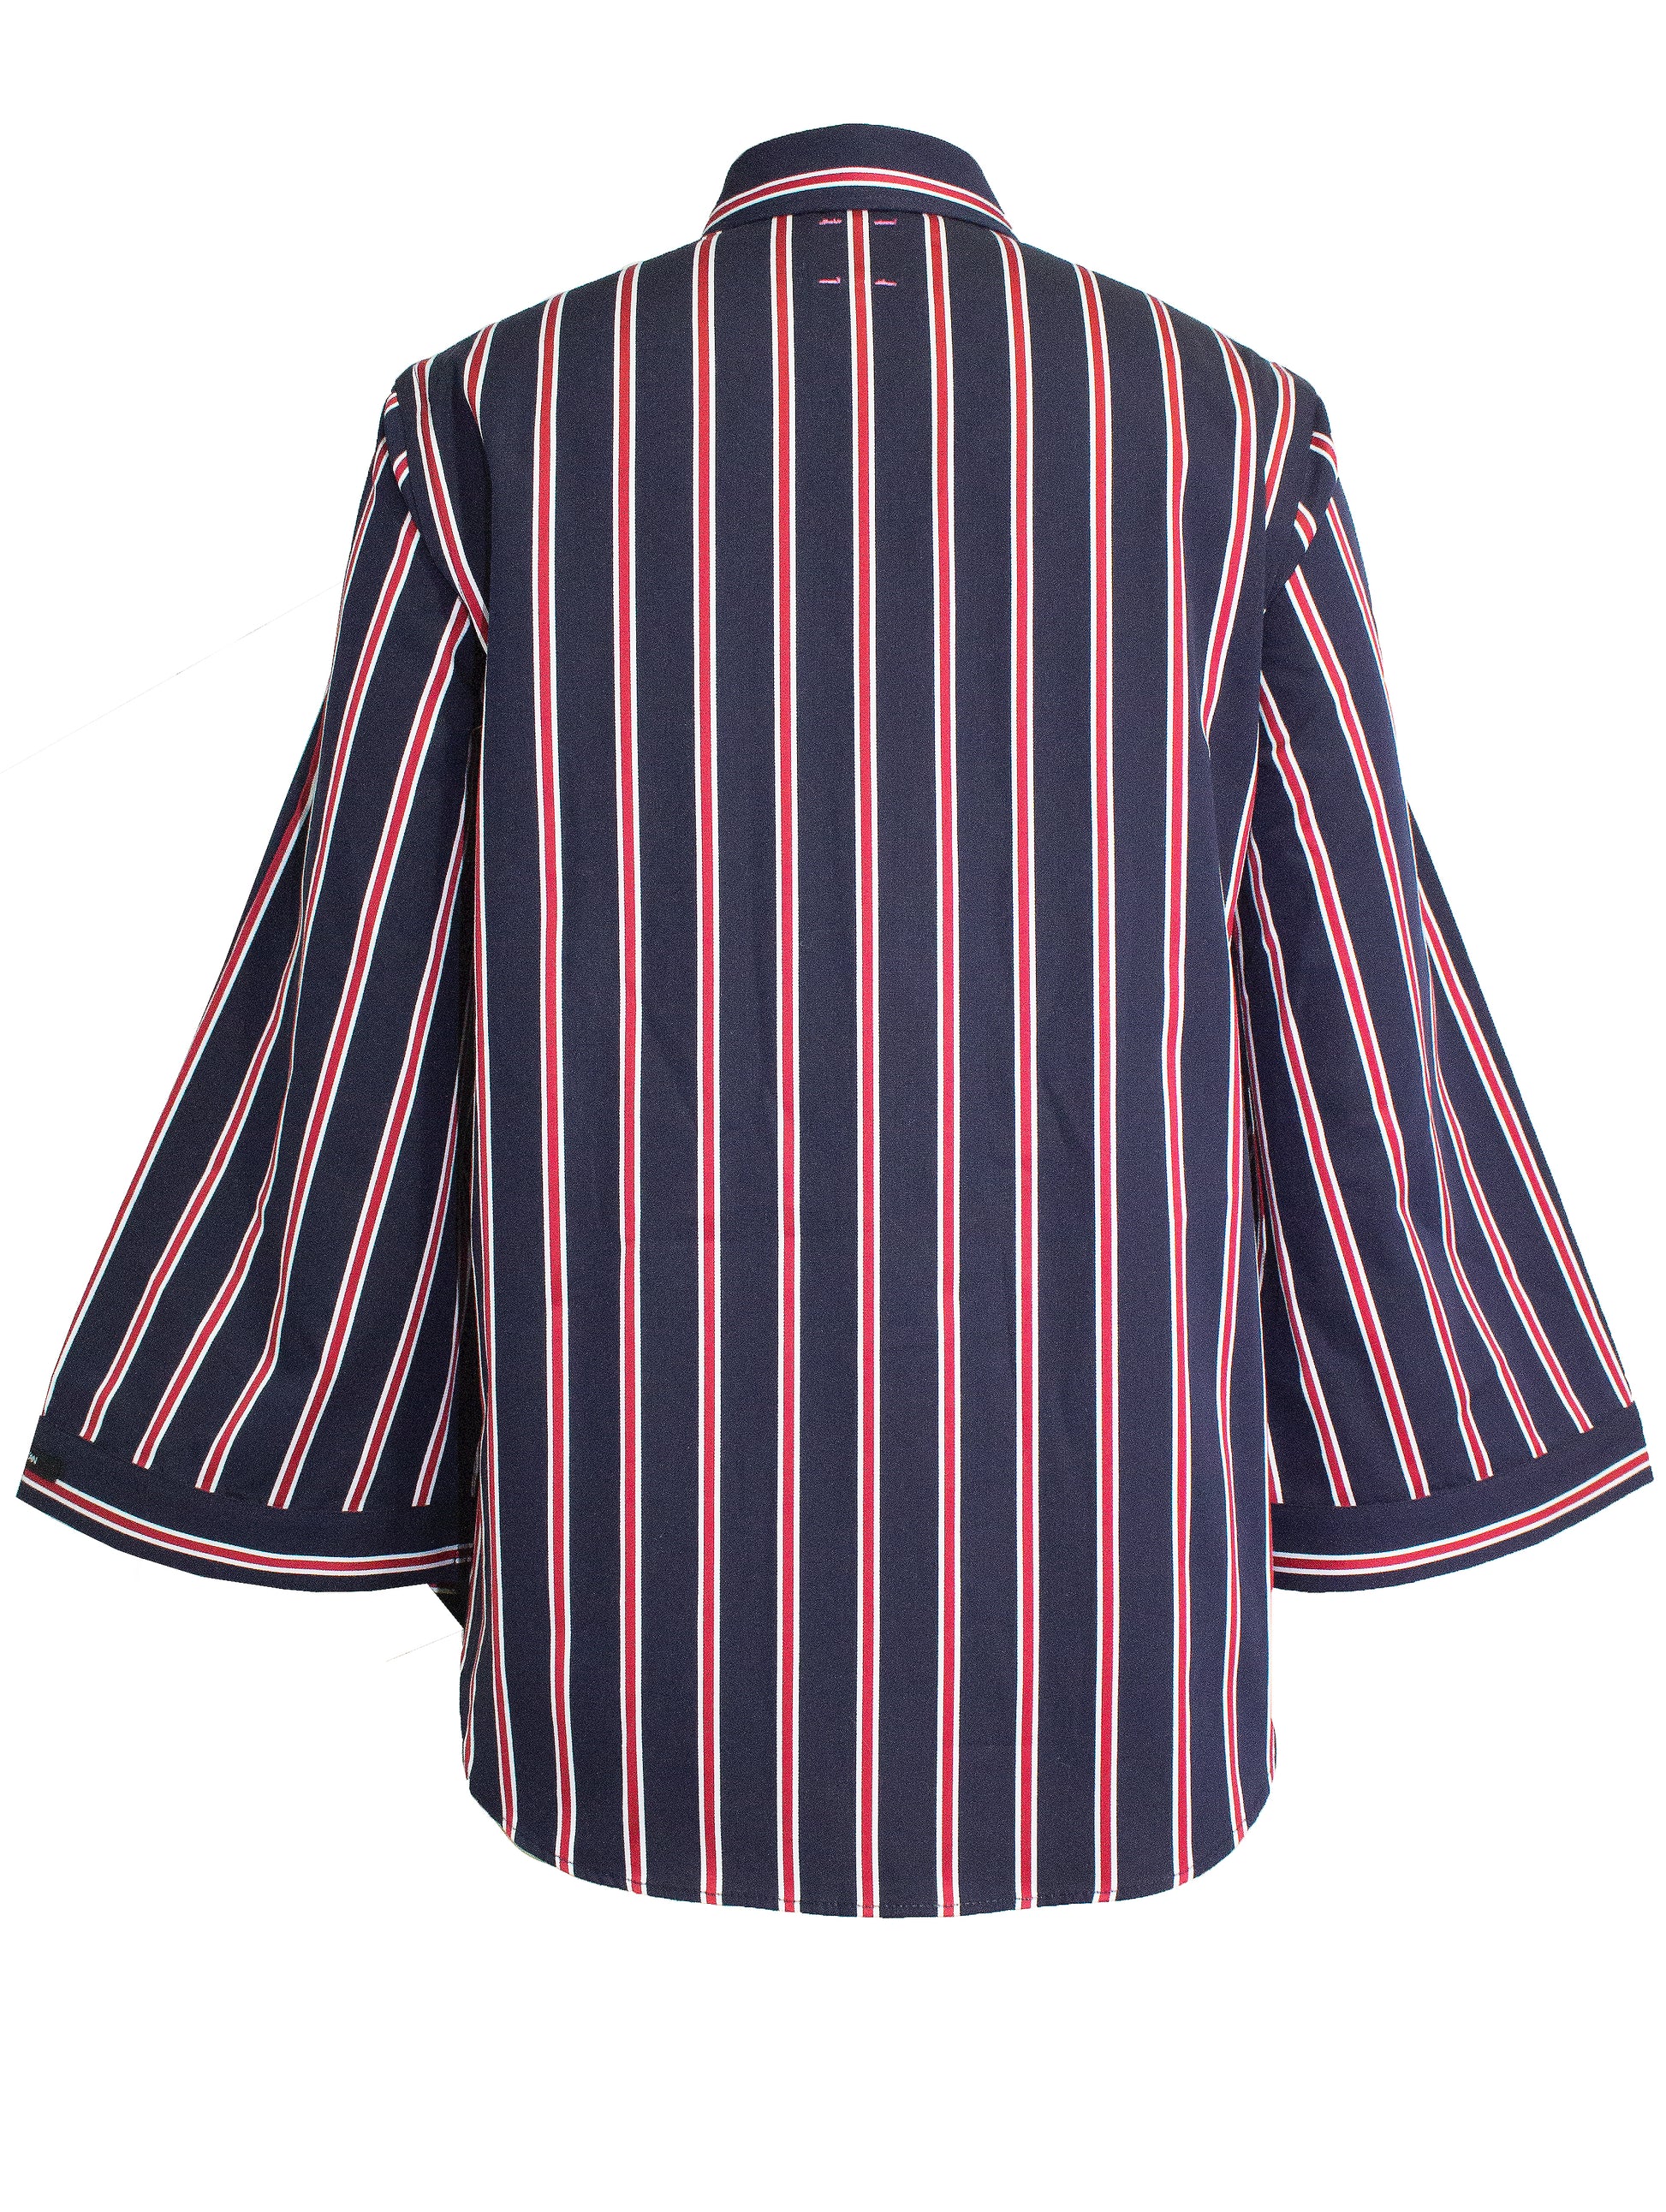 Bell Sleeve Shirt 3/4 Sleeve - Navy/Red Pink Tartan